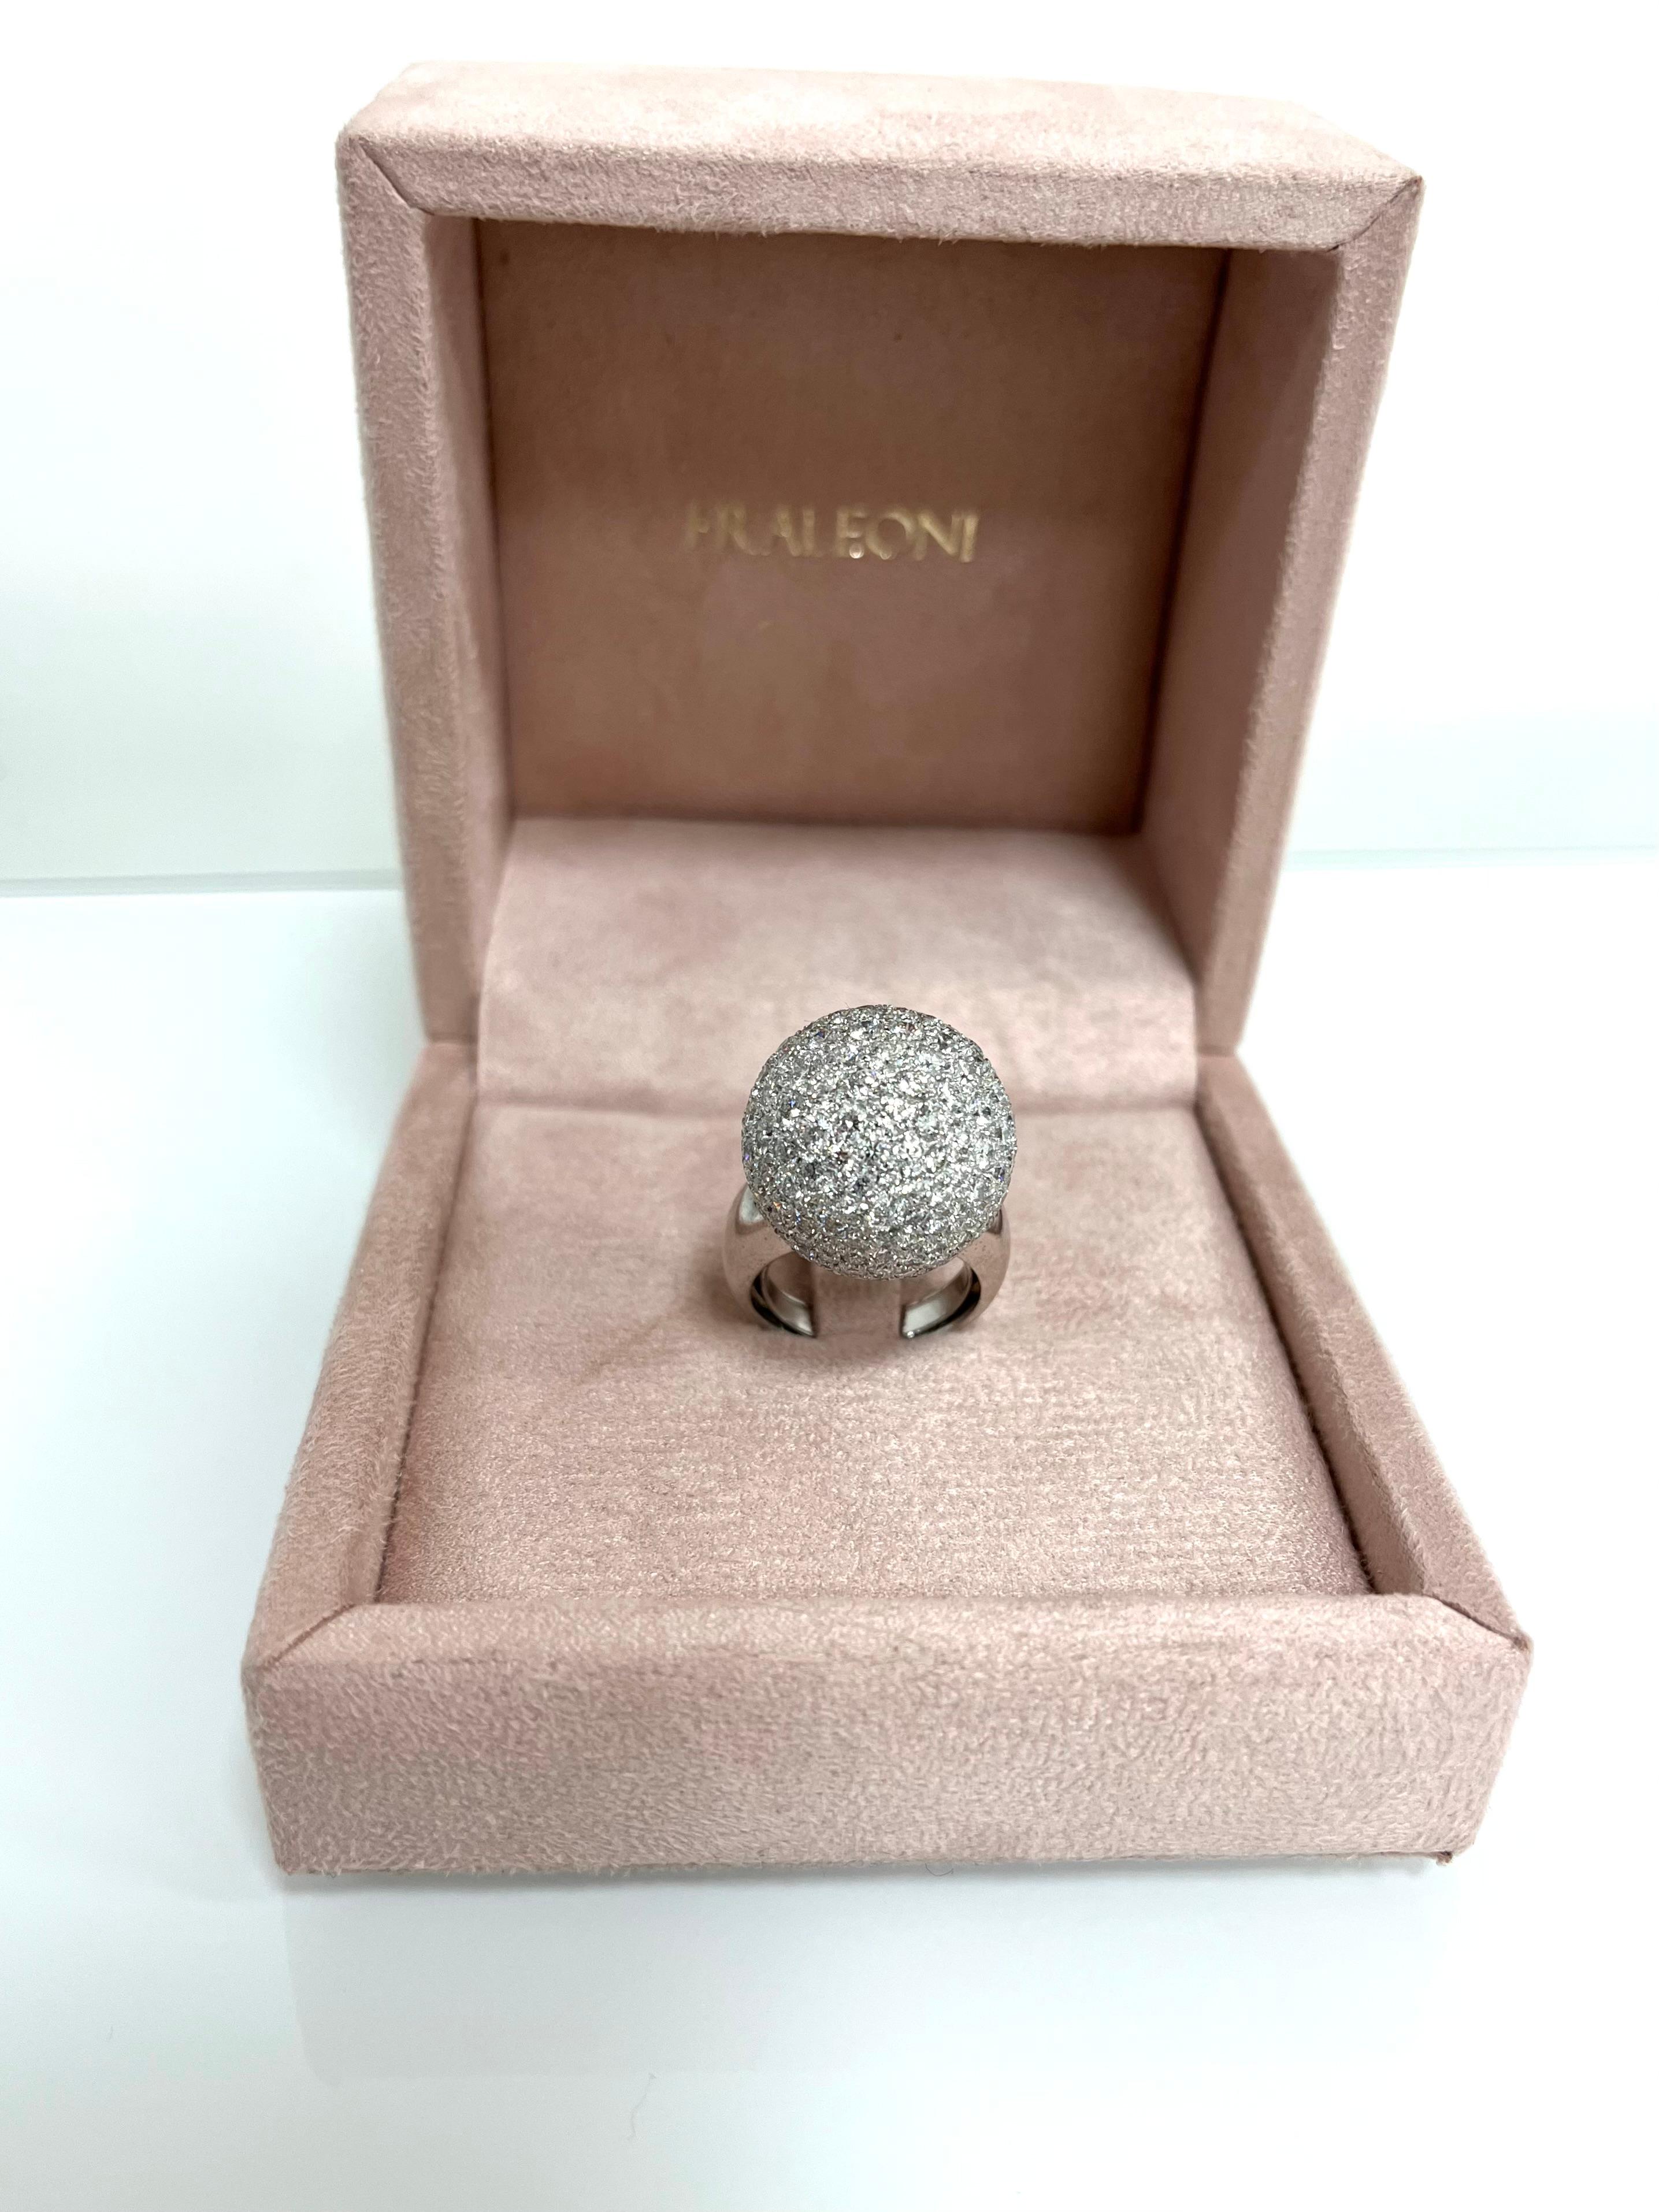 Fraleoni 18 Kt. White Gold Diamond Cocktail Ring For Sale 1